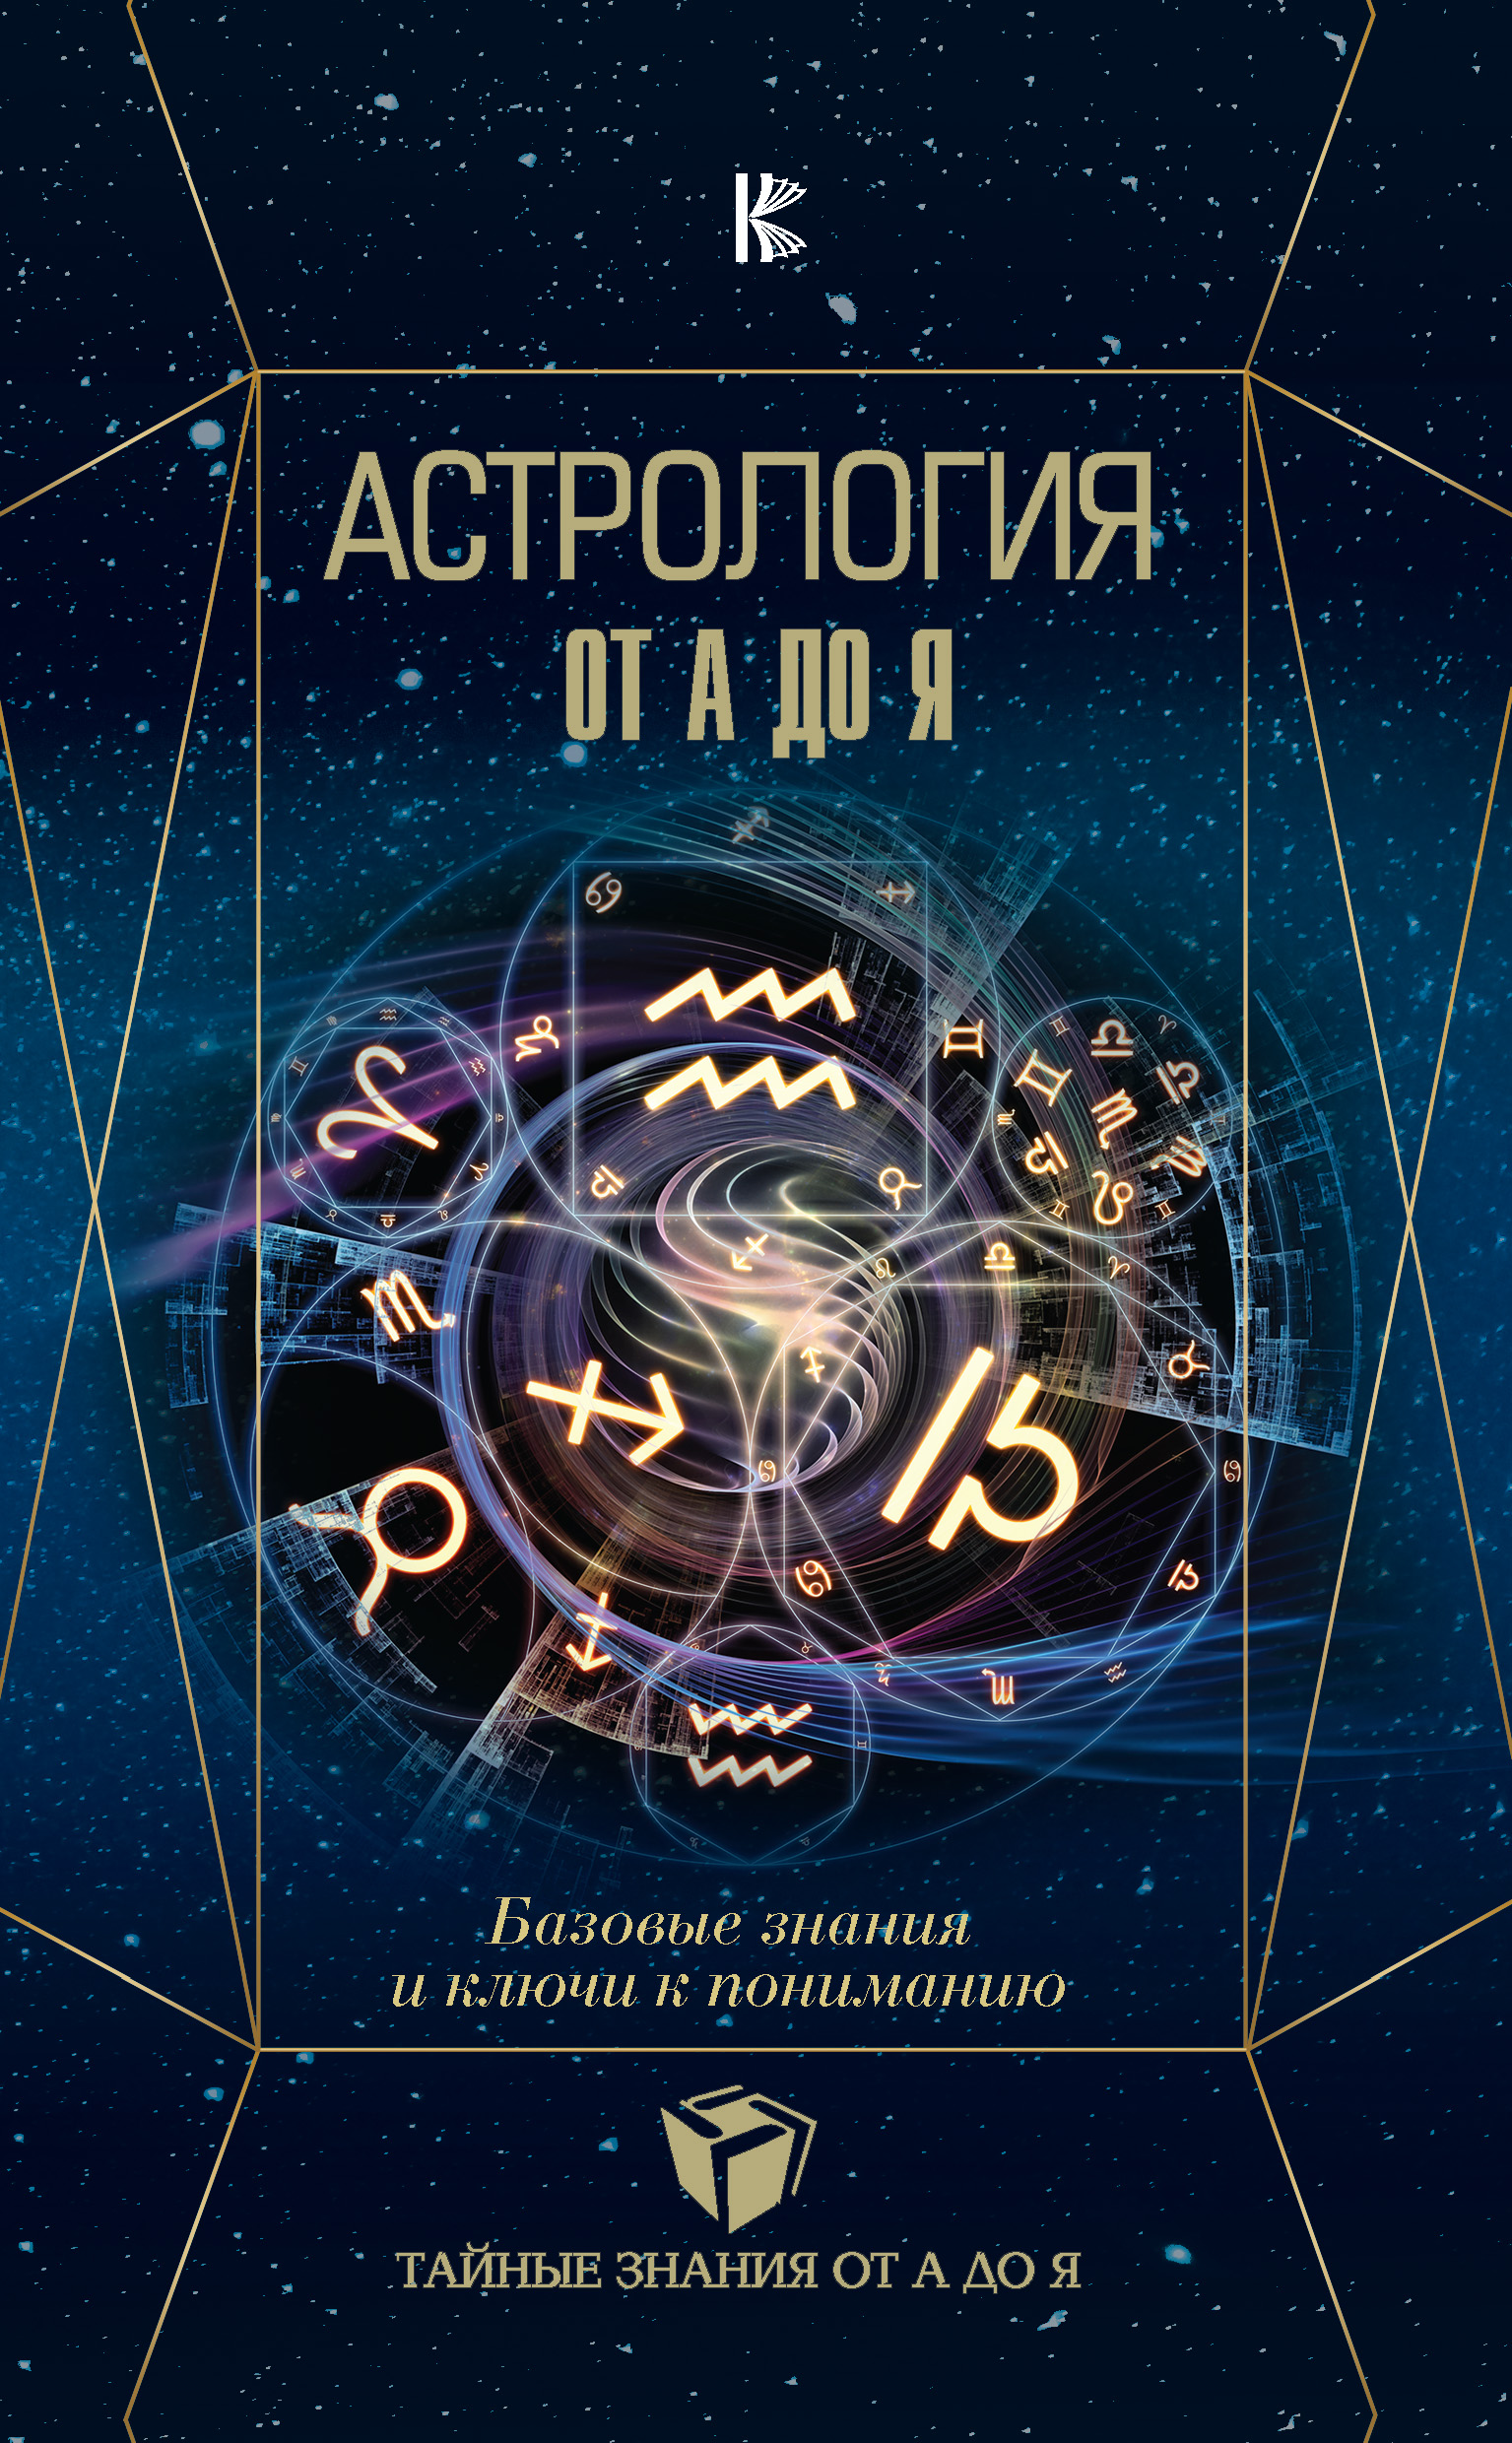 Скачать Астрология. Базовые знания и ключи к пониманию - Павел Андреев